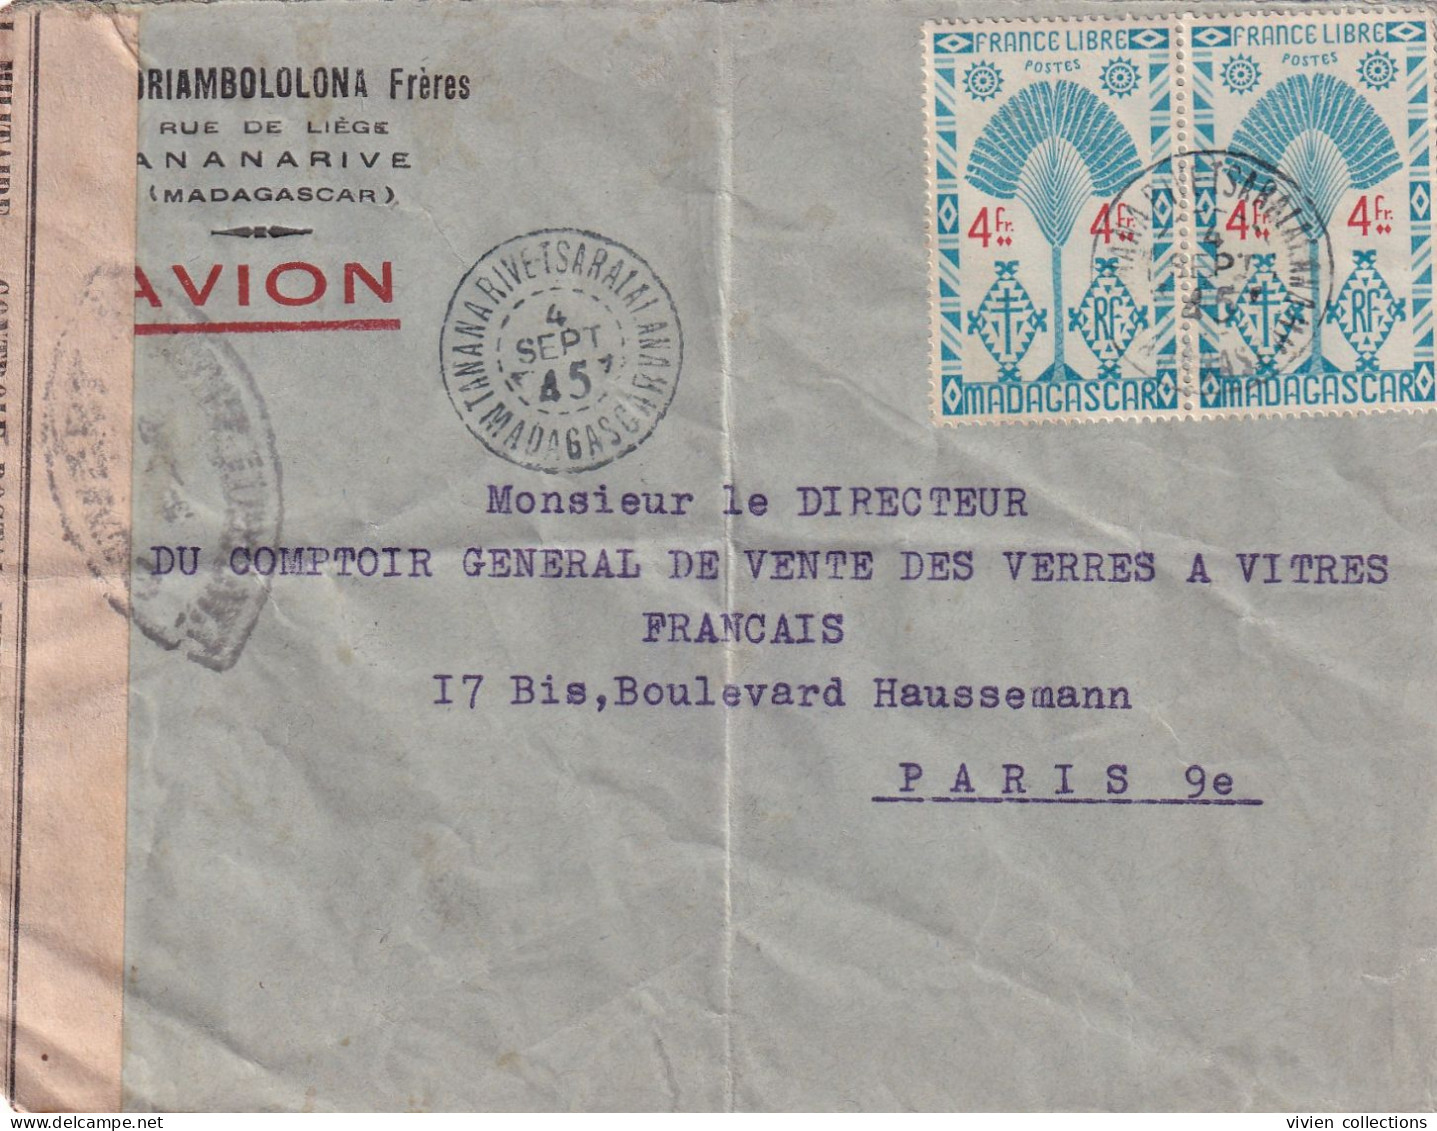 Madagascar Tananarive Tsaralalana 04/09/1945 Lettre Par Avion Ouvert Par La Censure Militaire Correspondance Commerciale - Storia Postale